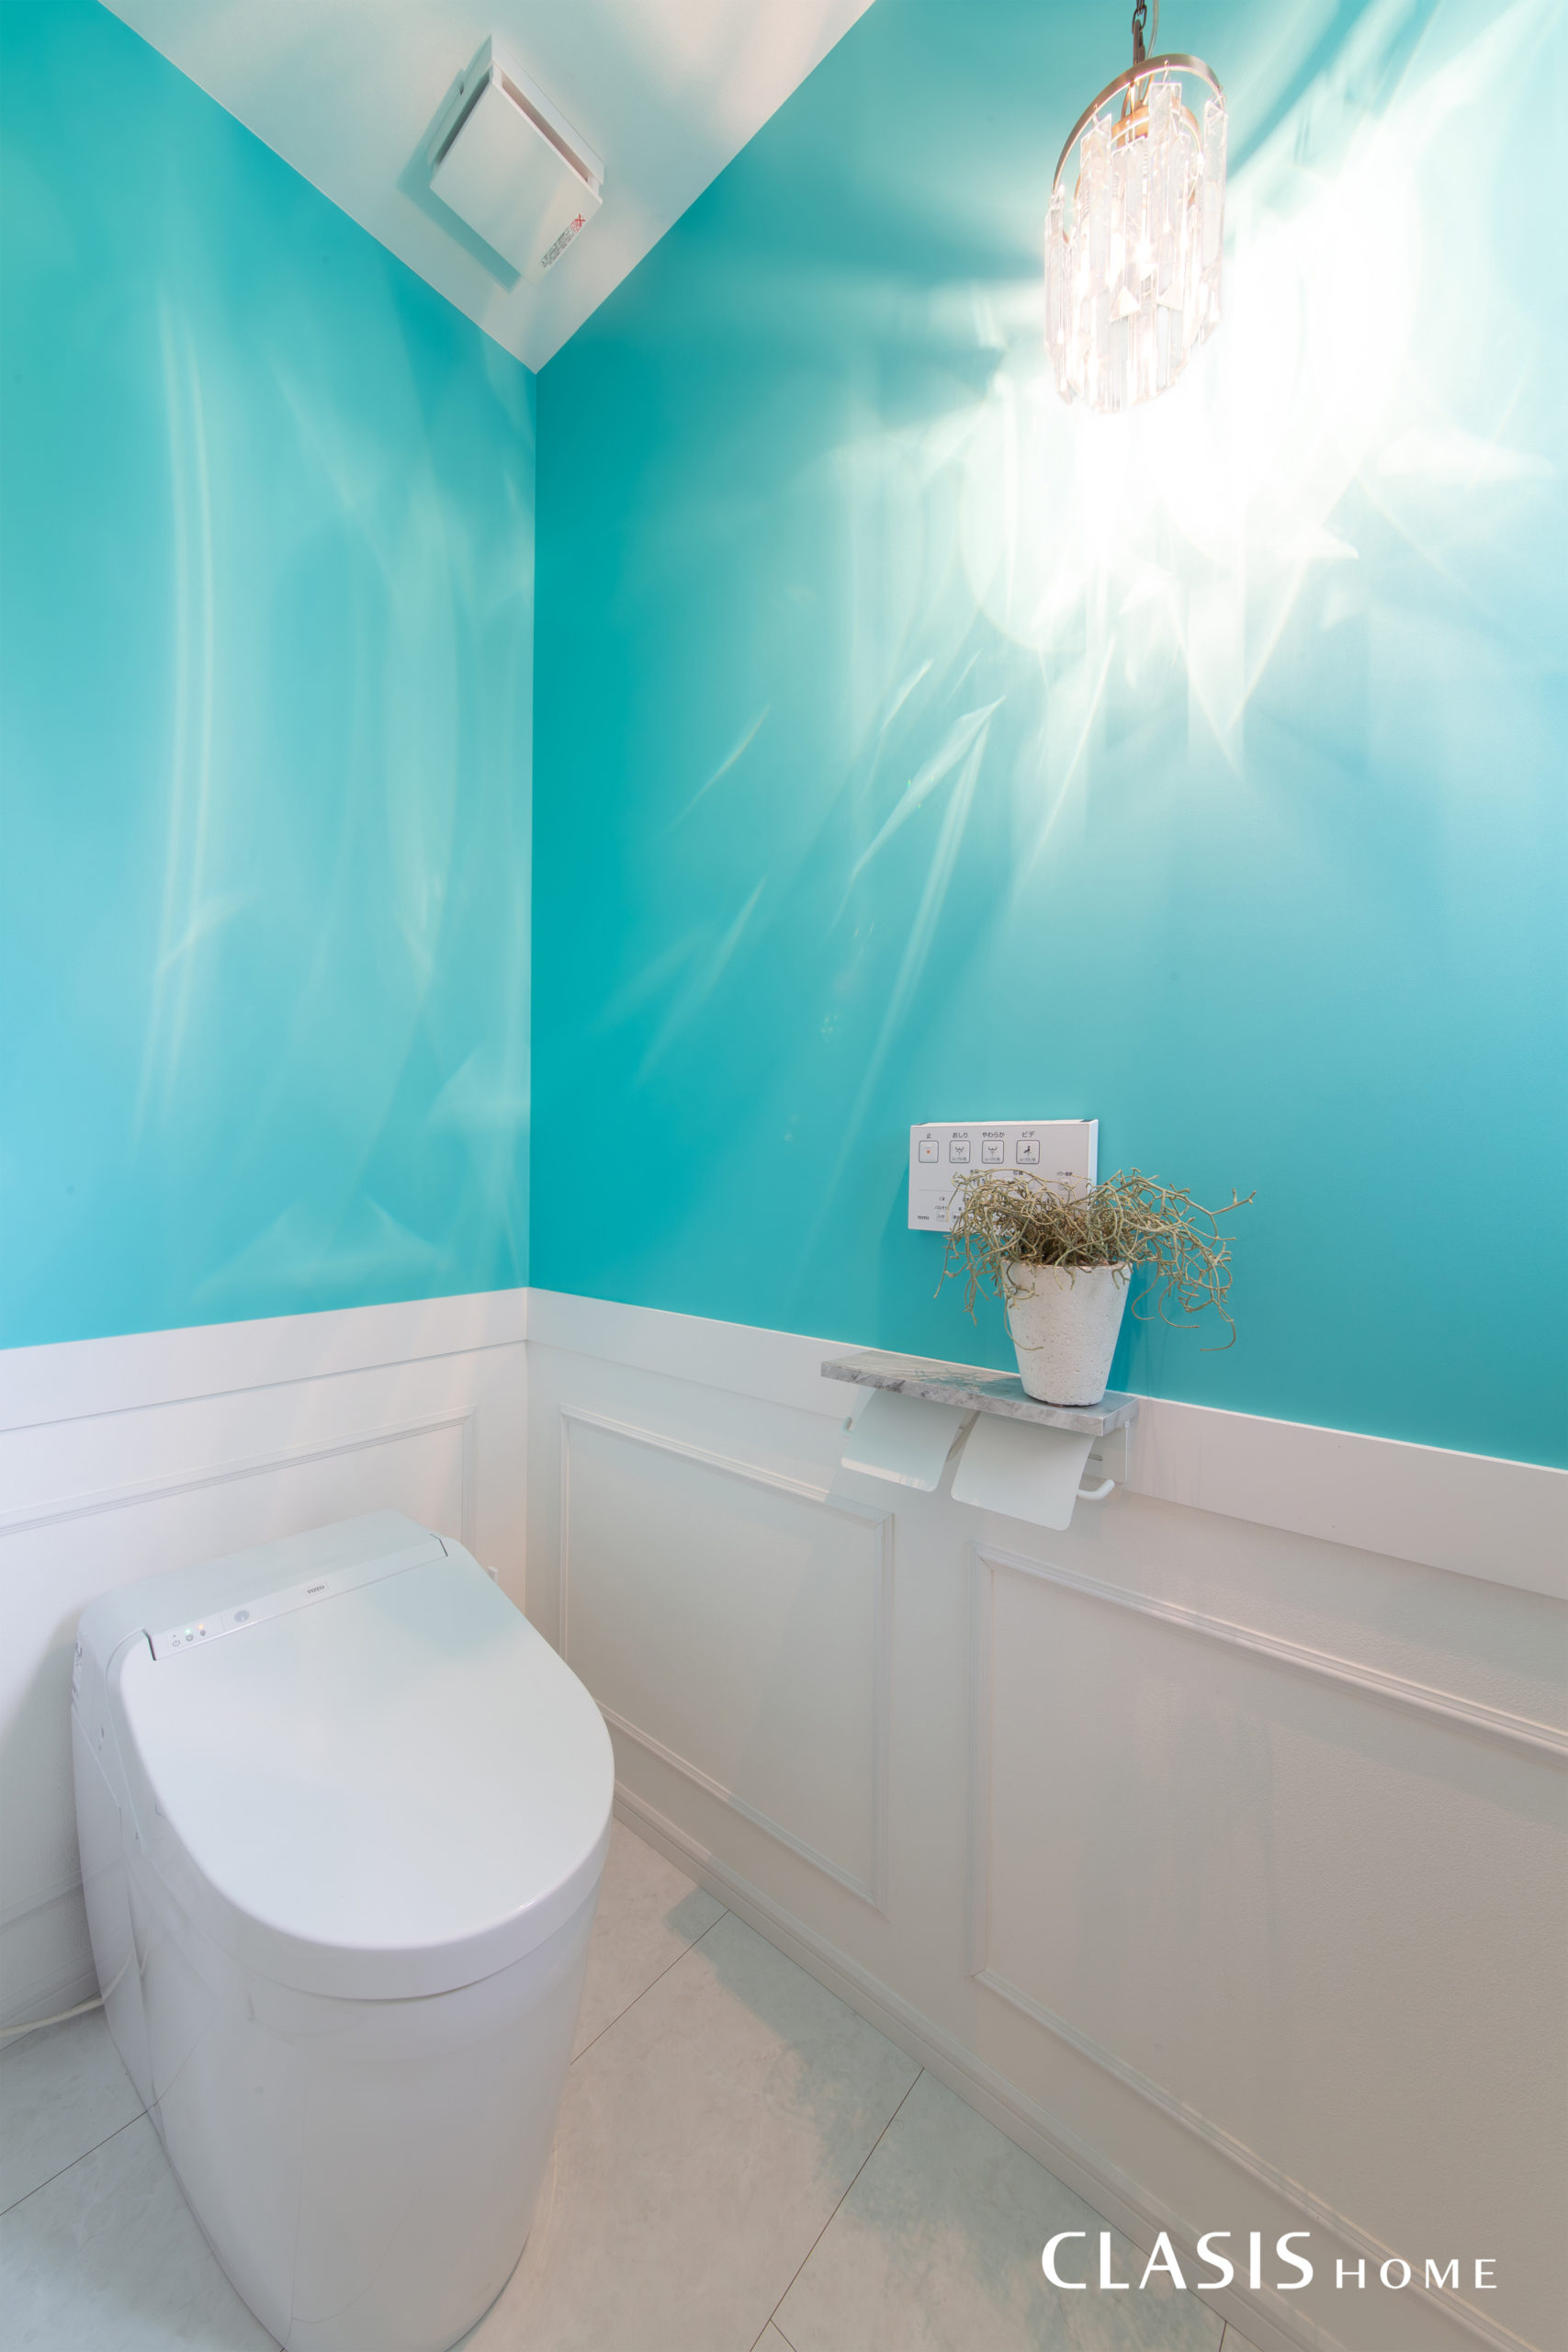 ティファニーブルーと白のモールディング付きの腰壁が鮮やかなトイレ